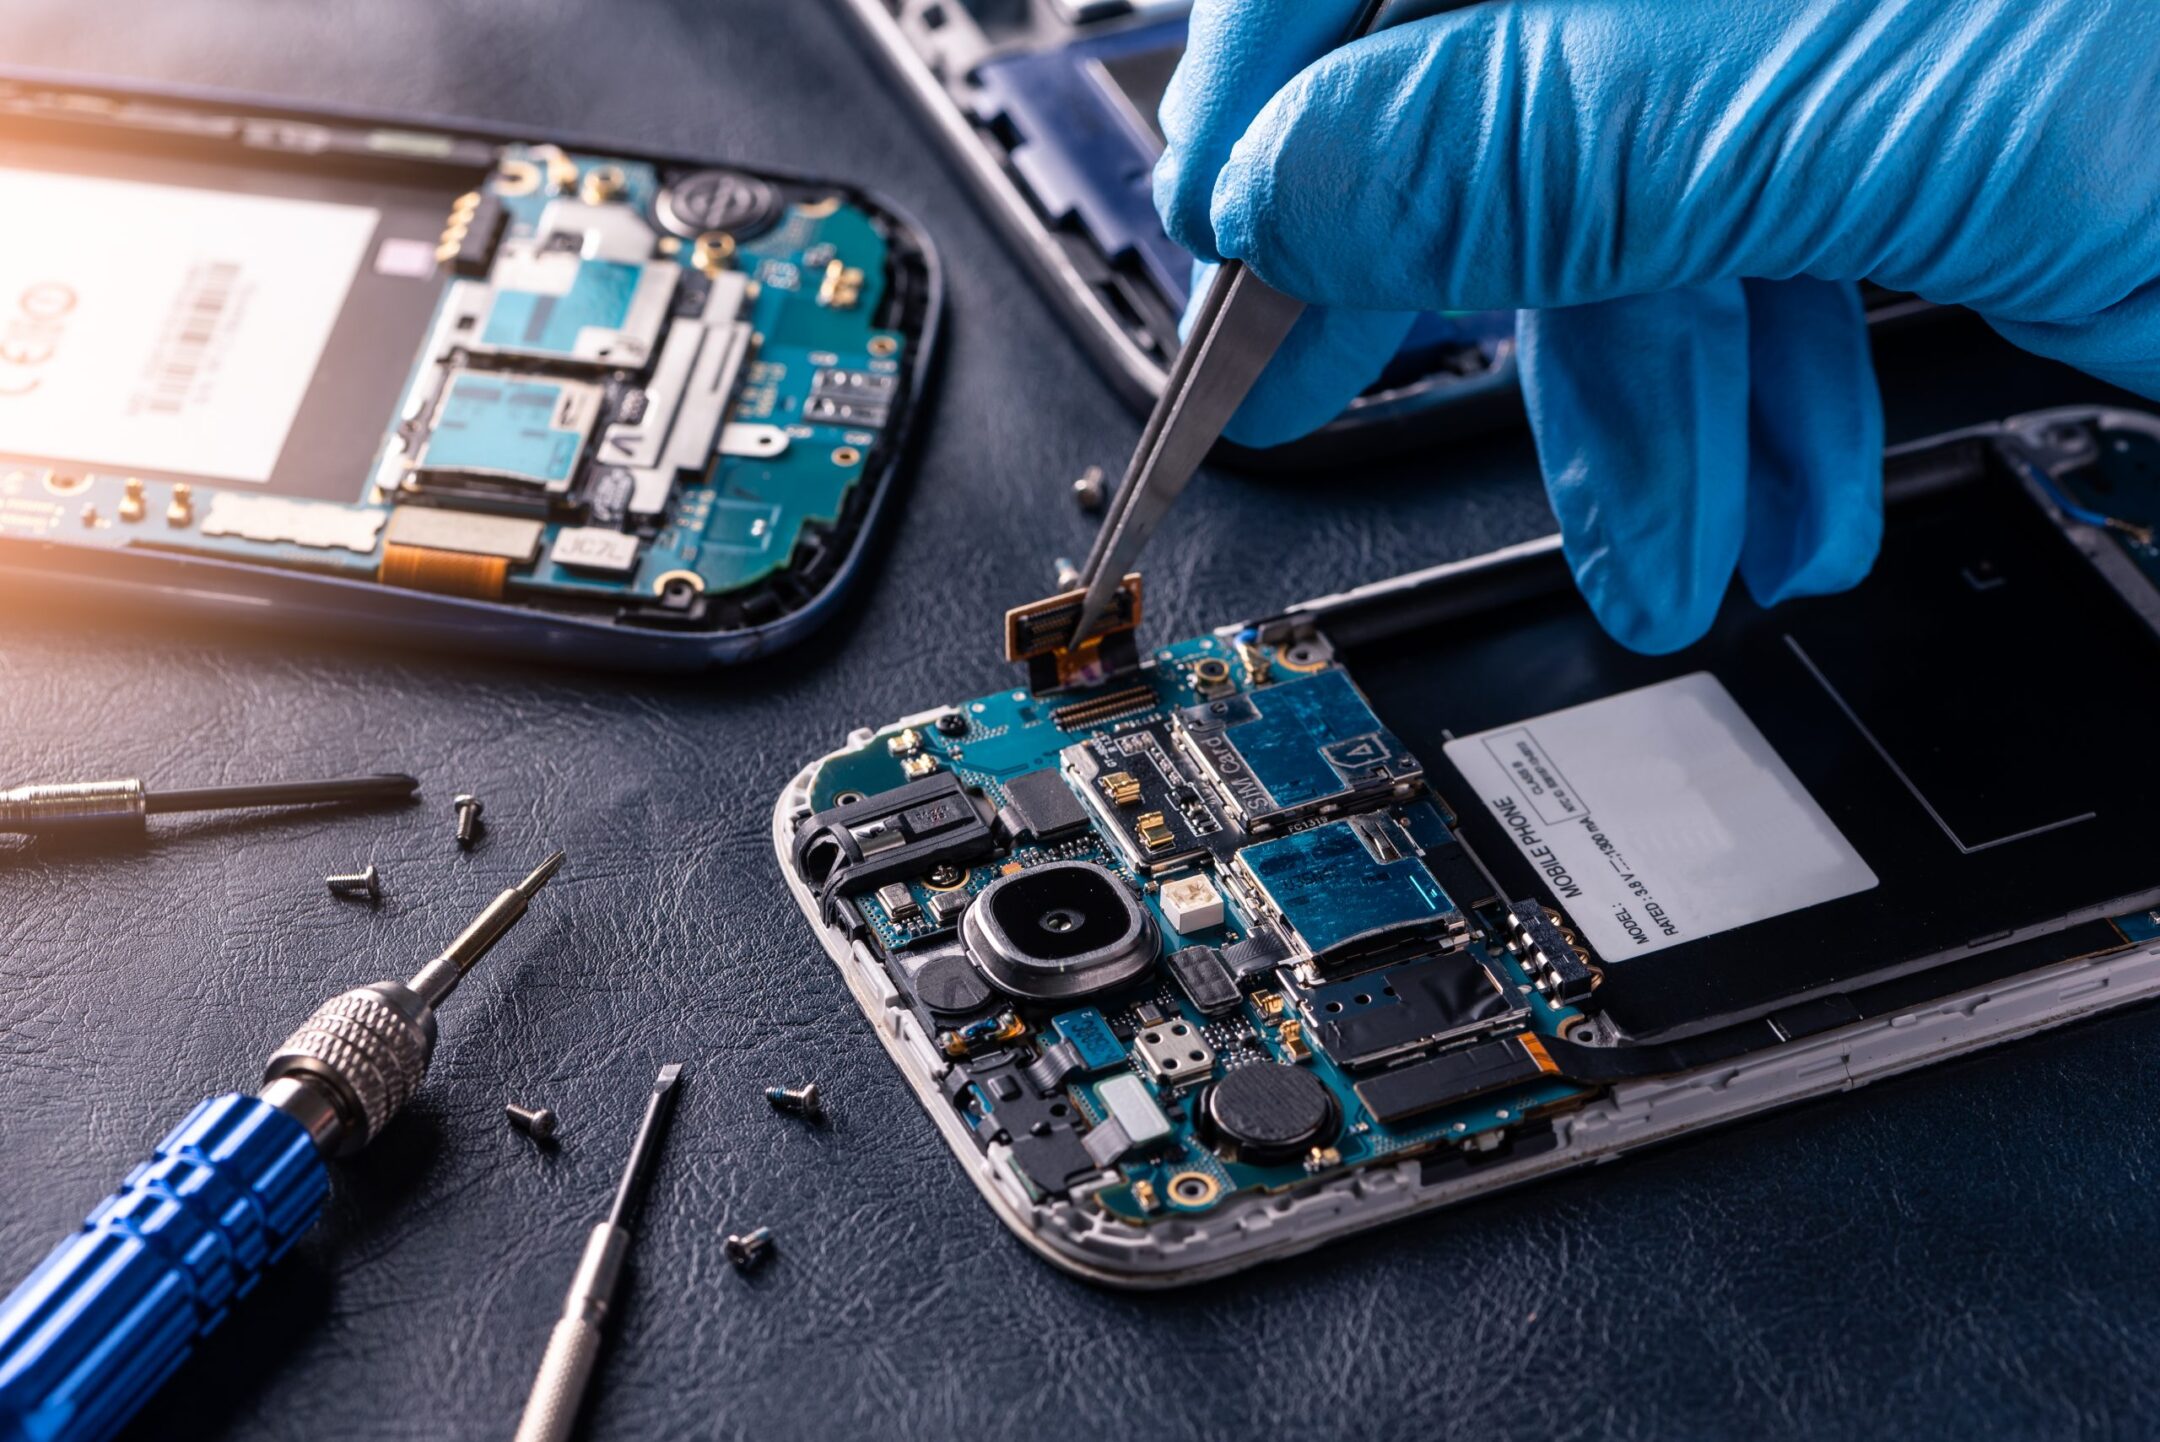 Мобильный смартфон: что может сломаться в первую очередь, как ремонтировать, поломка зарядки, заливка водой, не работает дисплей